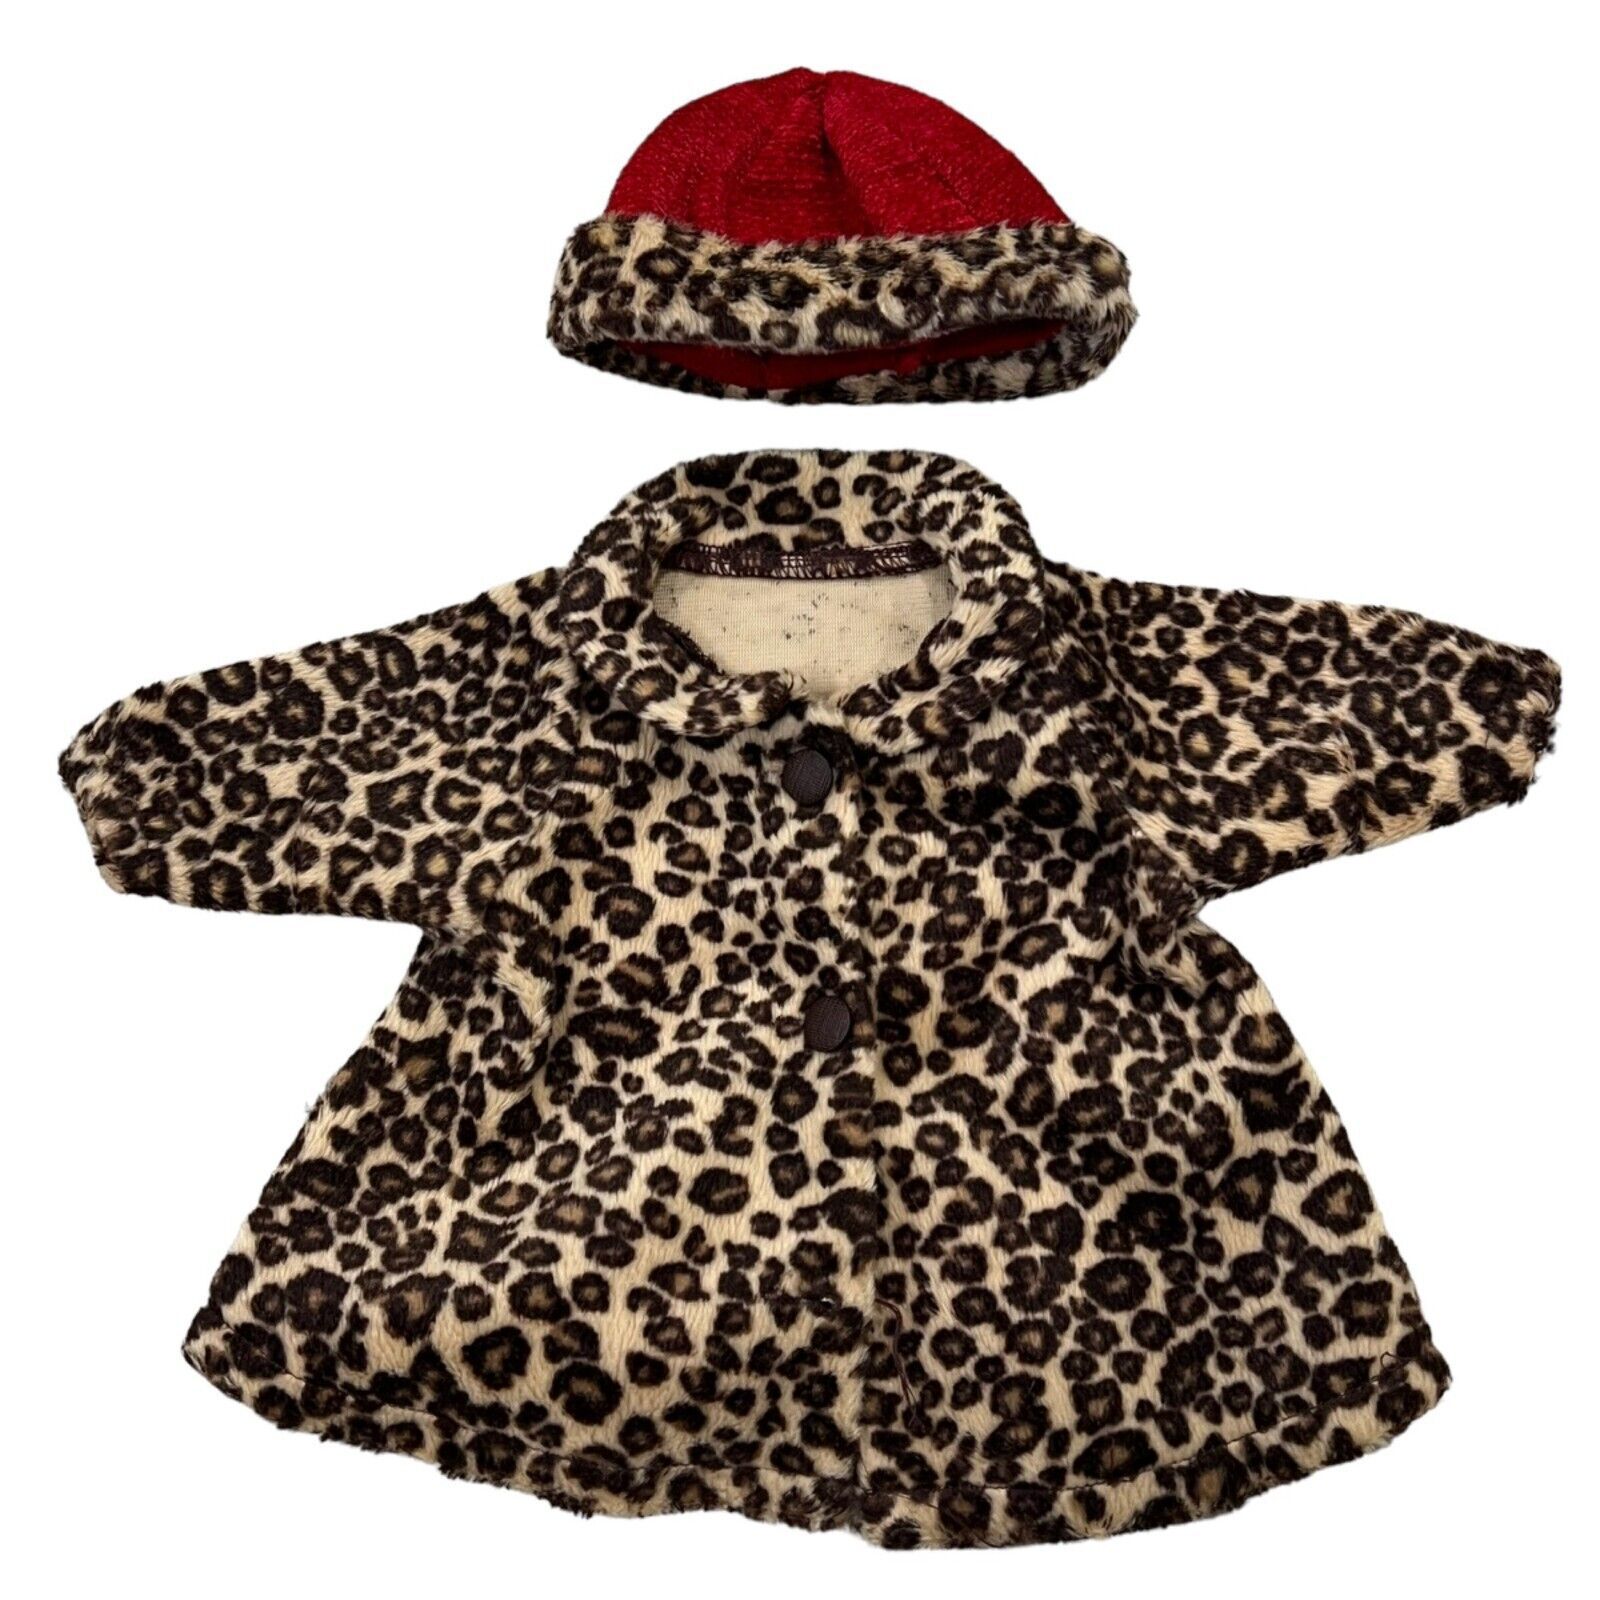 Bitty Baby American GIrl Chocolate Cherry Coat & Hat Set - $33.60